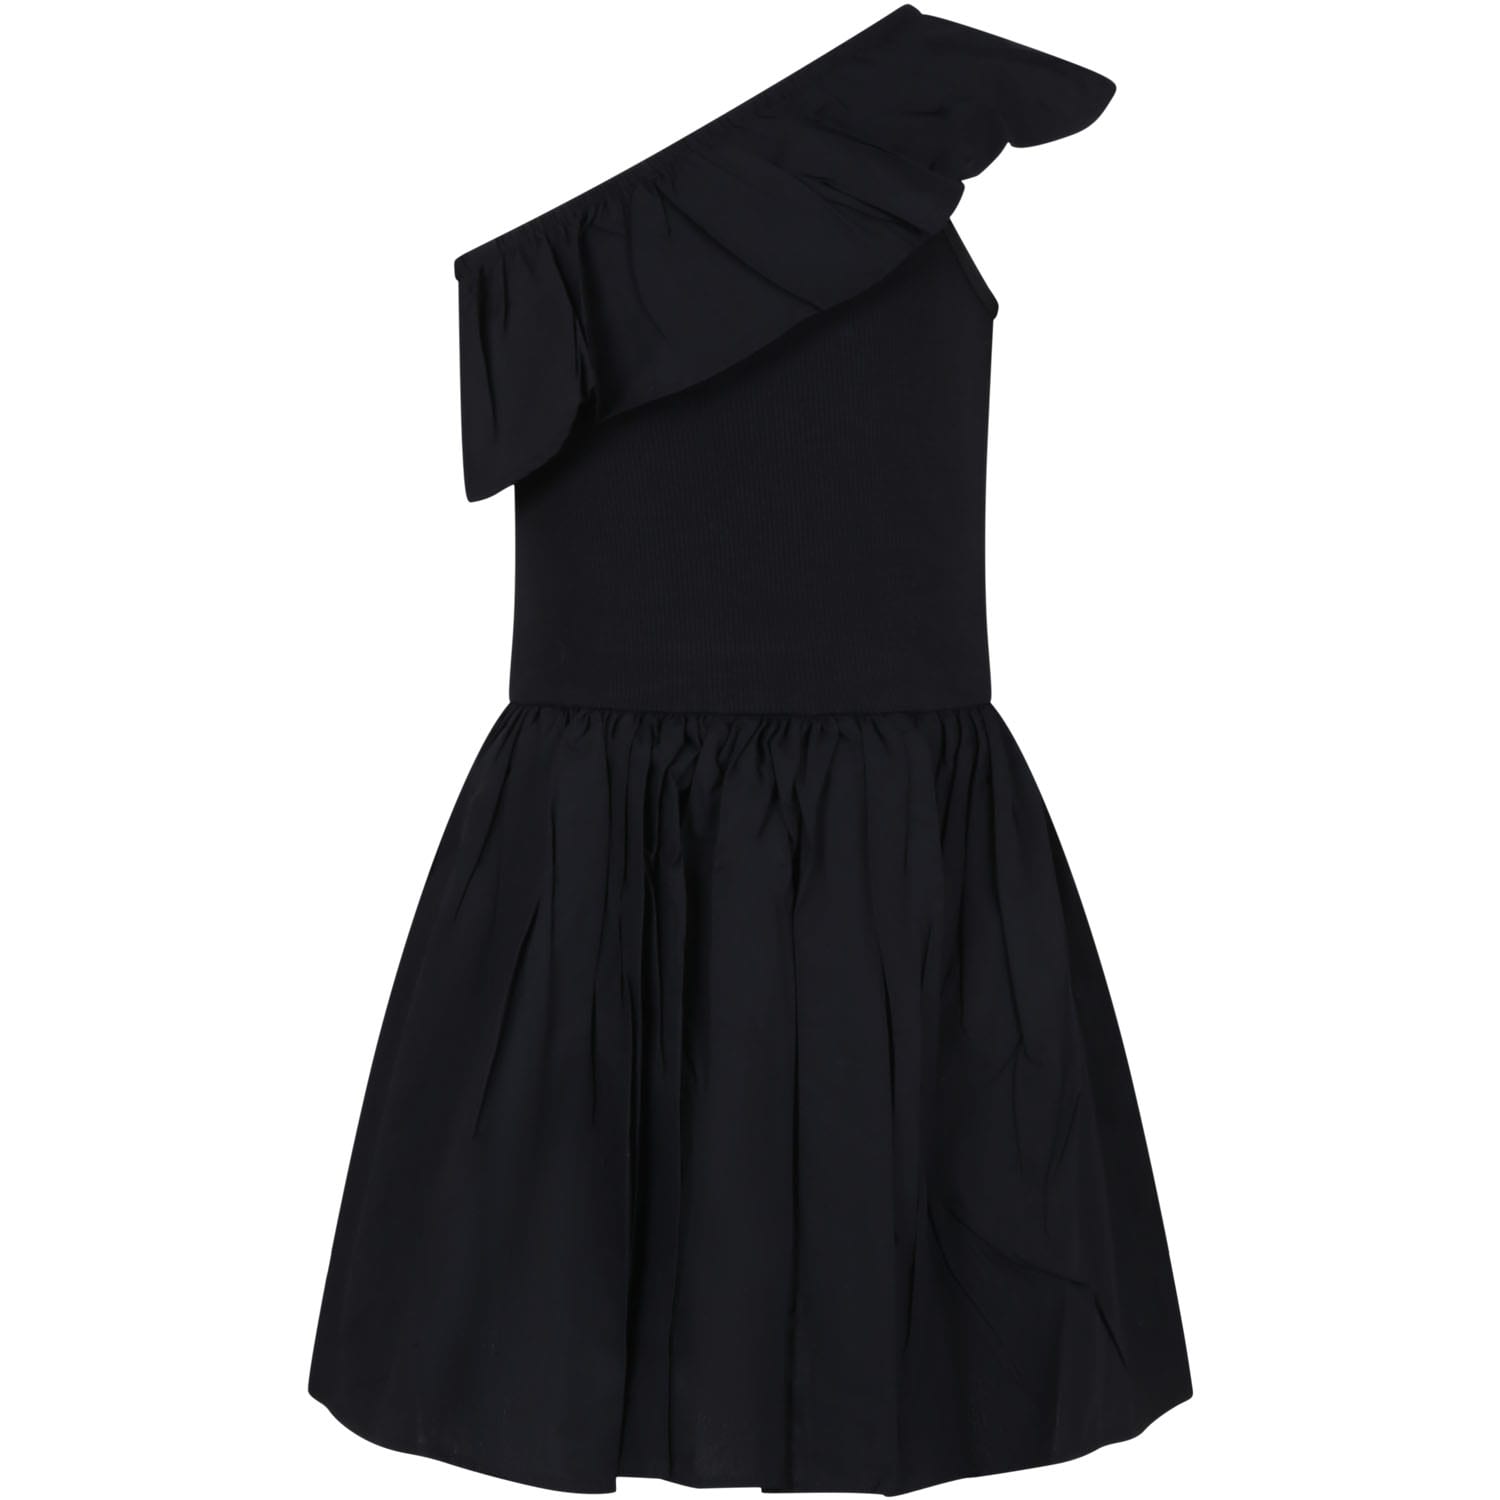 Molo Kids' Black Dress For Girl